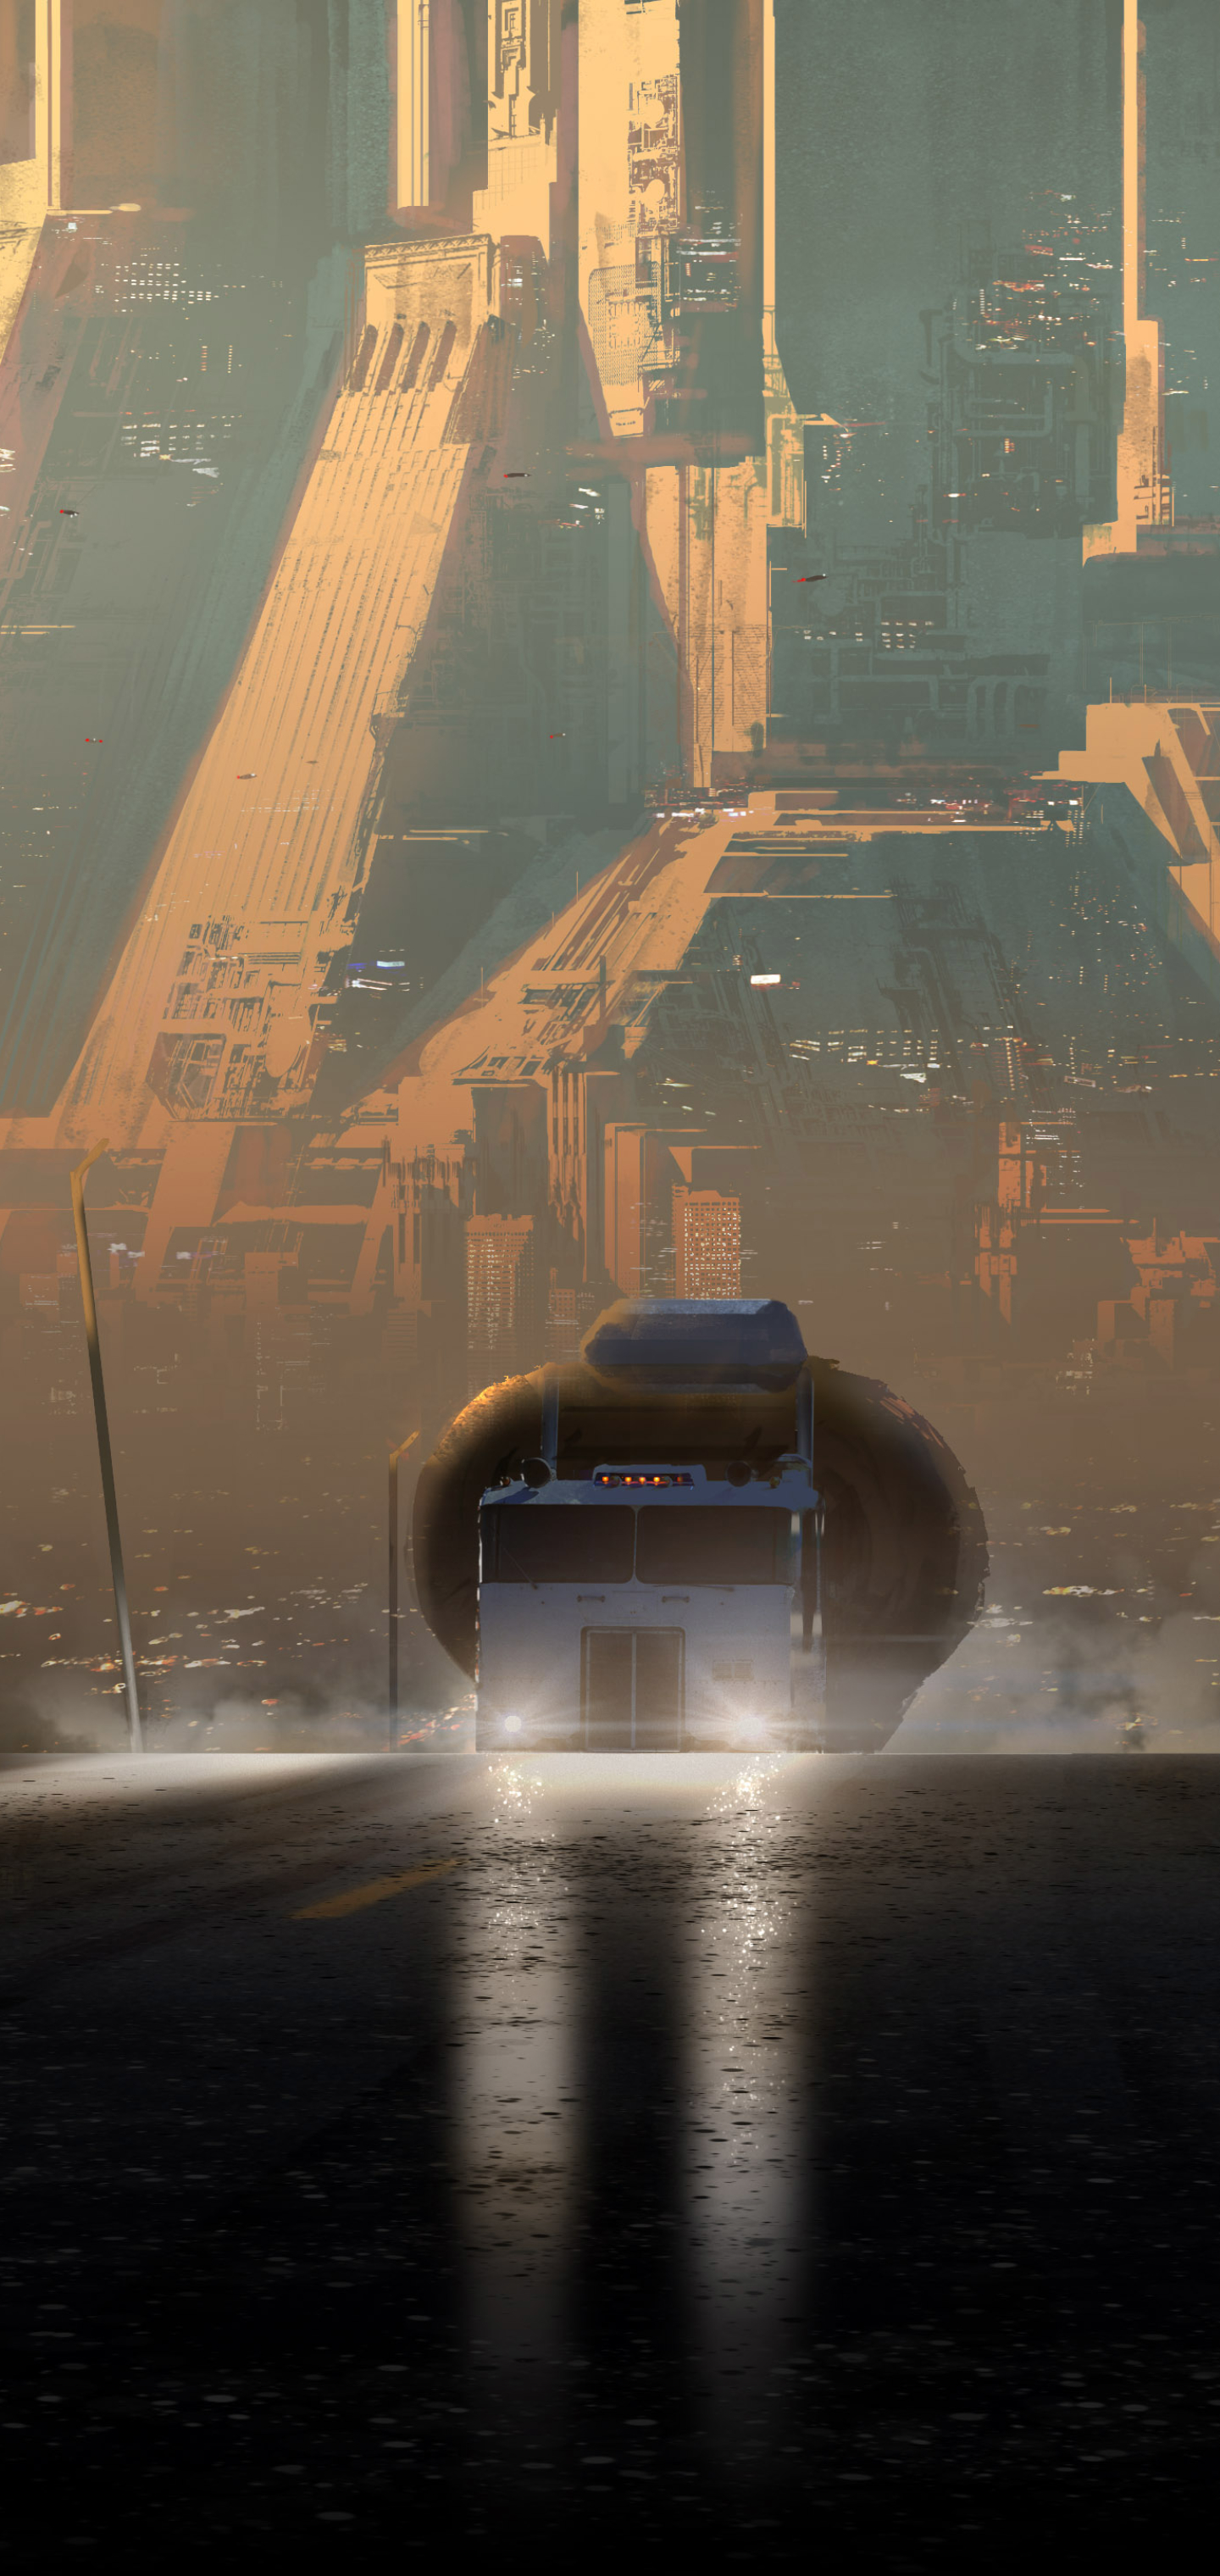 Descarga gratuita de fondo de pantalla para móvil de Ciudad, Futurista, Películas, Blade Runner 2049.